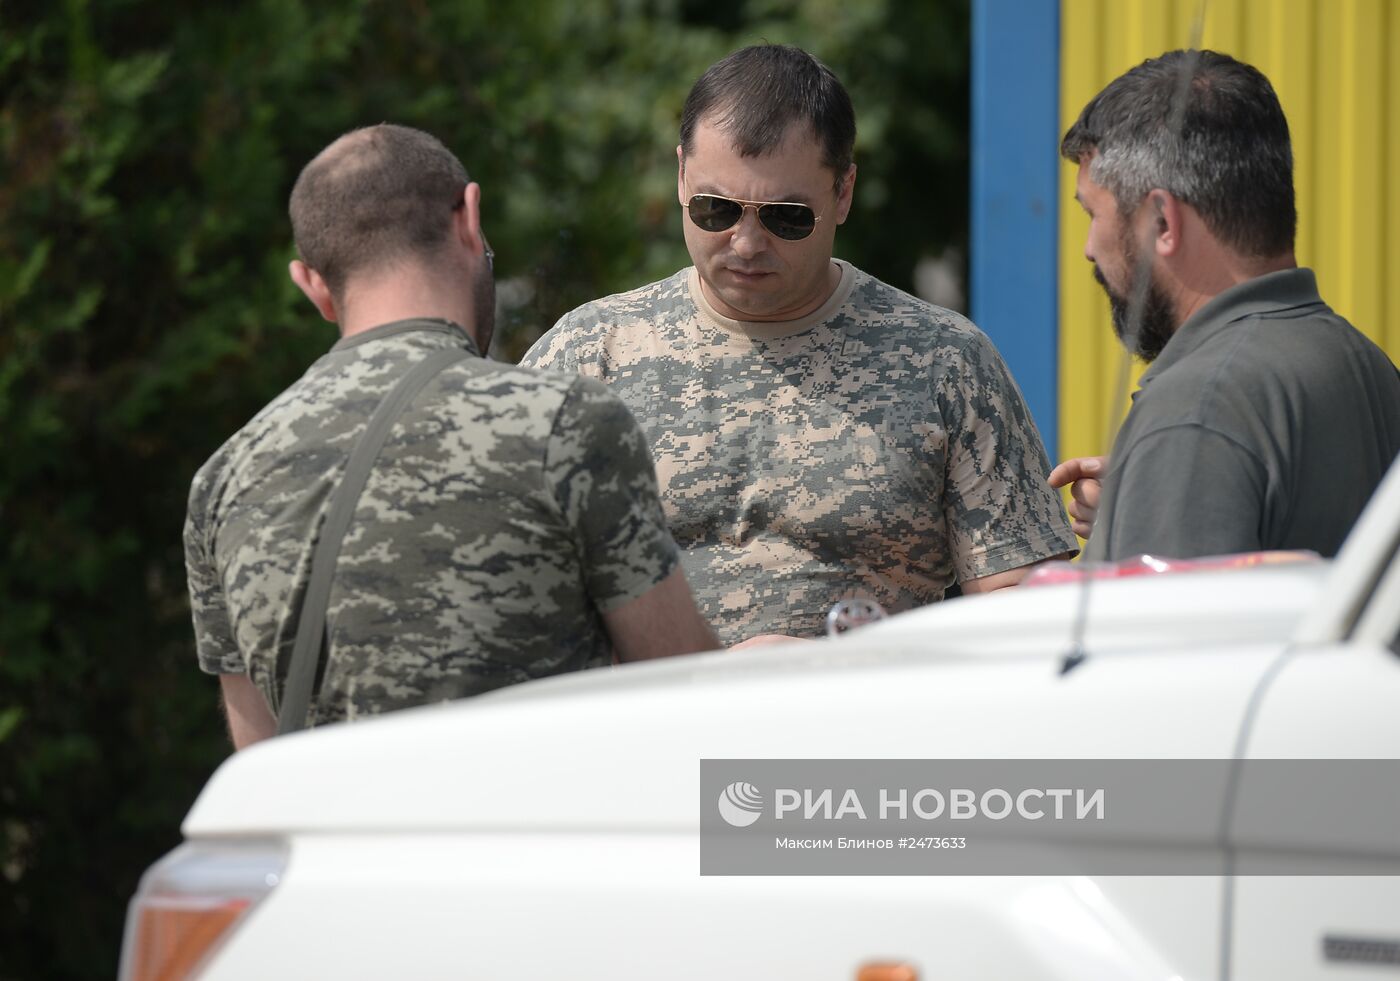 Глава Луганской народной республики Валерий Болотов посетил город Донецк Ростовской области